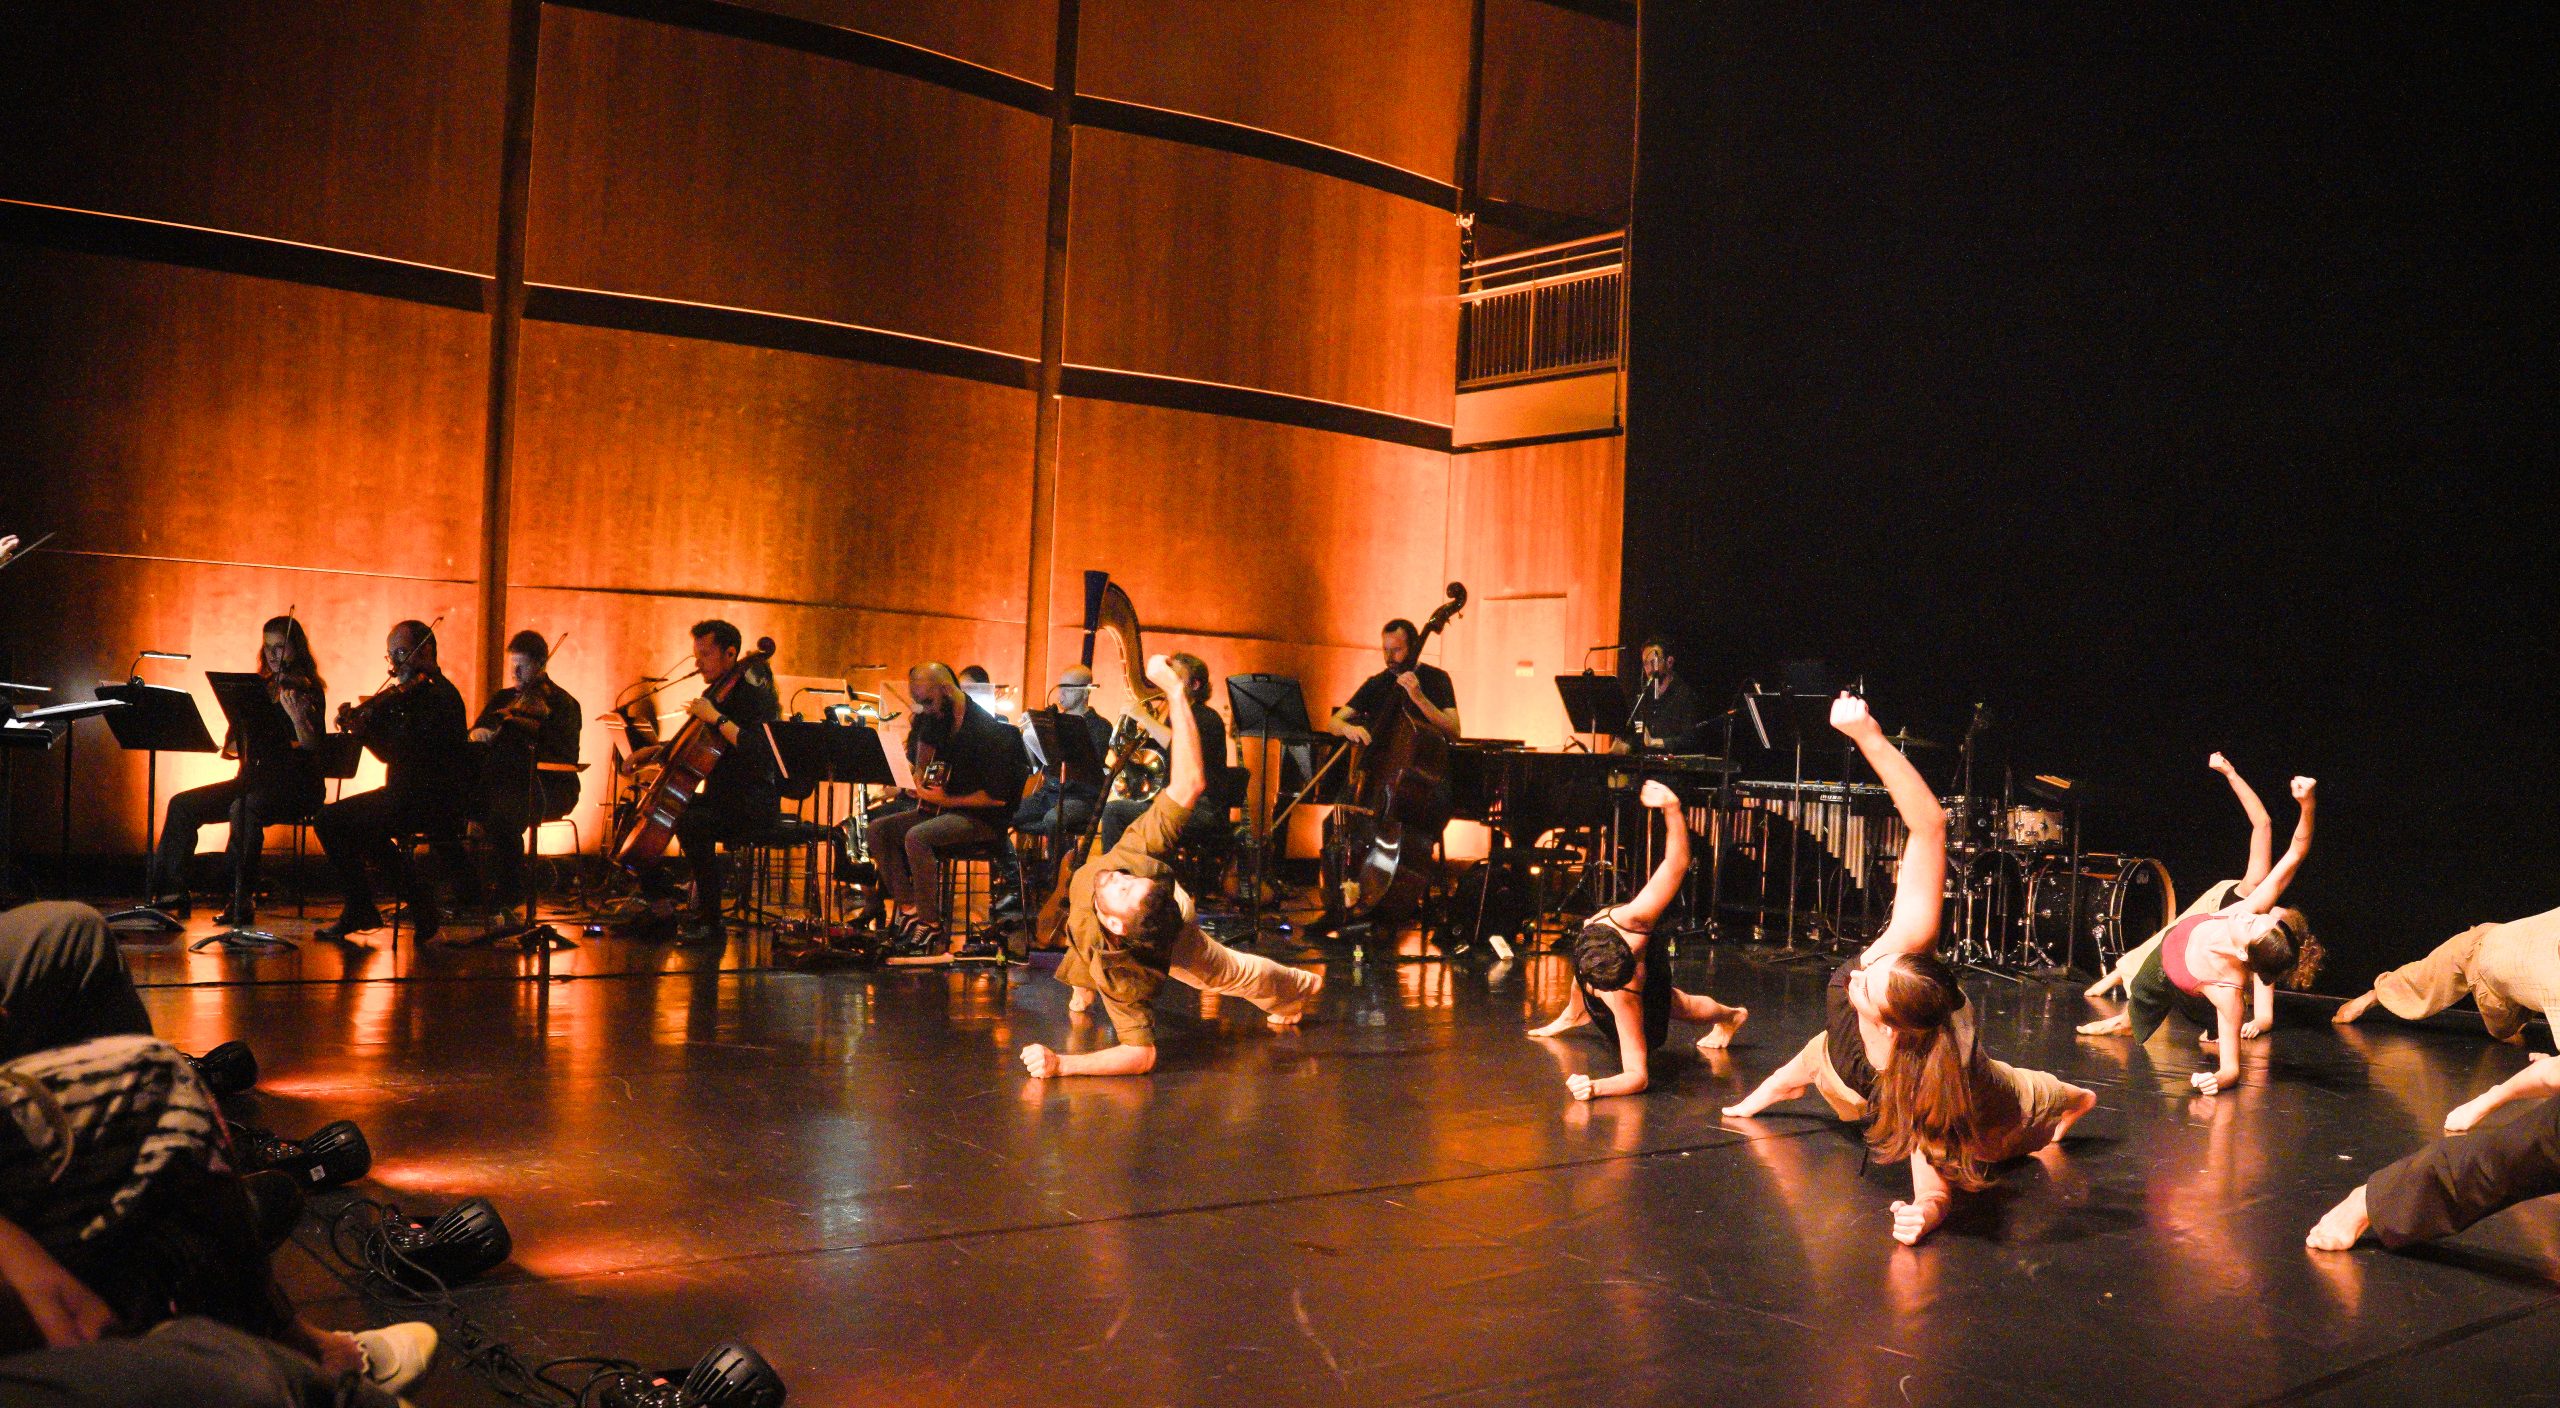 ‘בציר 2023’ פרויקט גמר של מסלול קומפוזיציה לאומנויות המסך והבמה בשיתוף הסדנה של להקת המחול ורטיגו ותזמורת המהפכה.